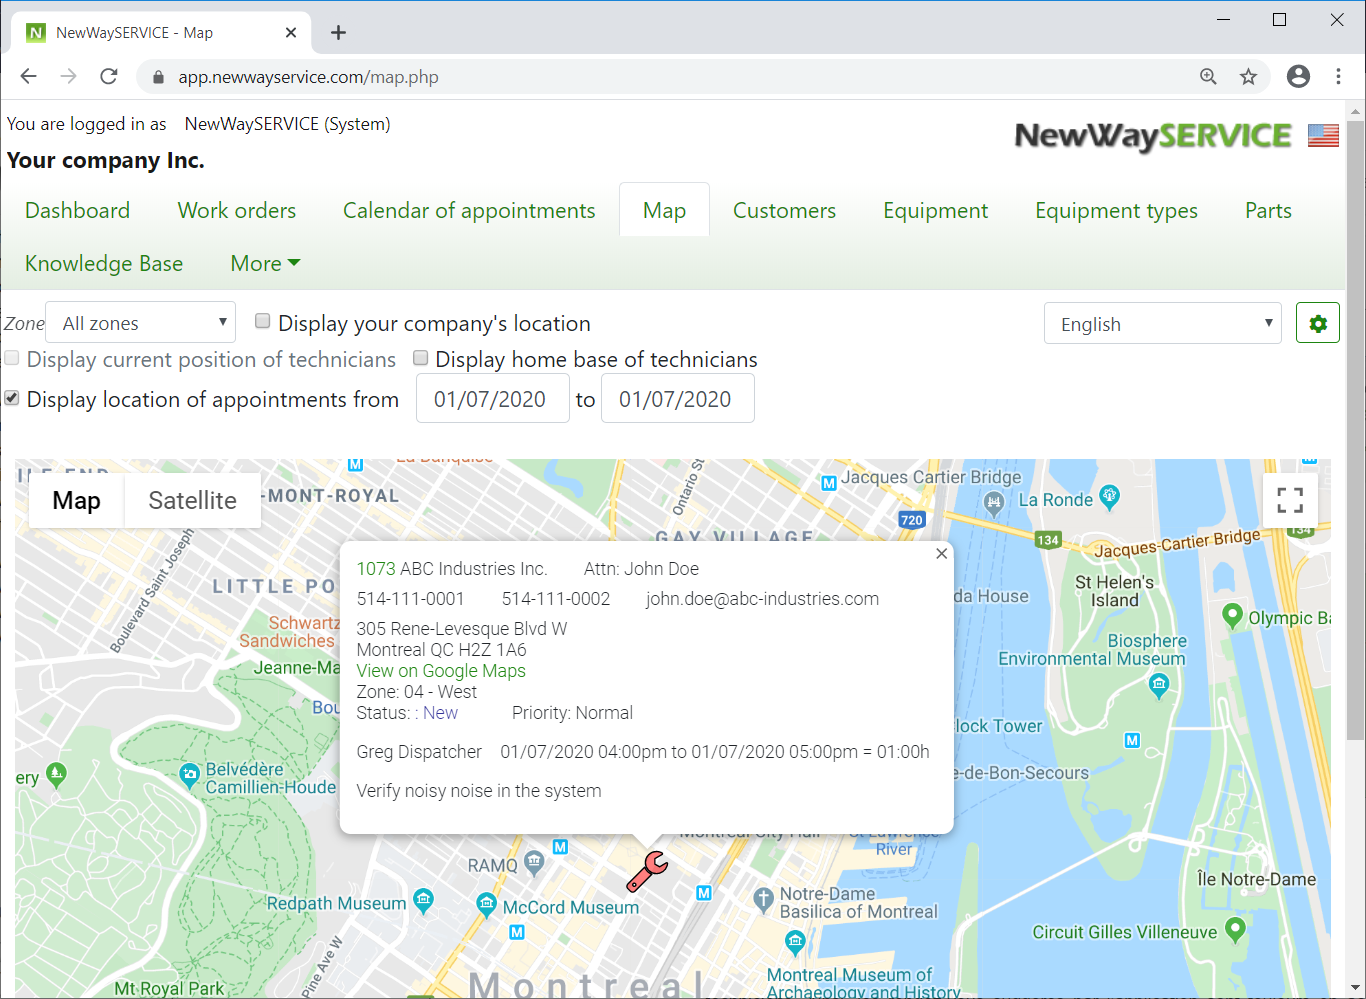 Service request management application - map Google Maps®